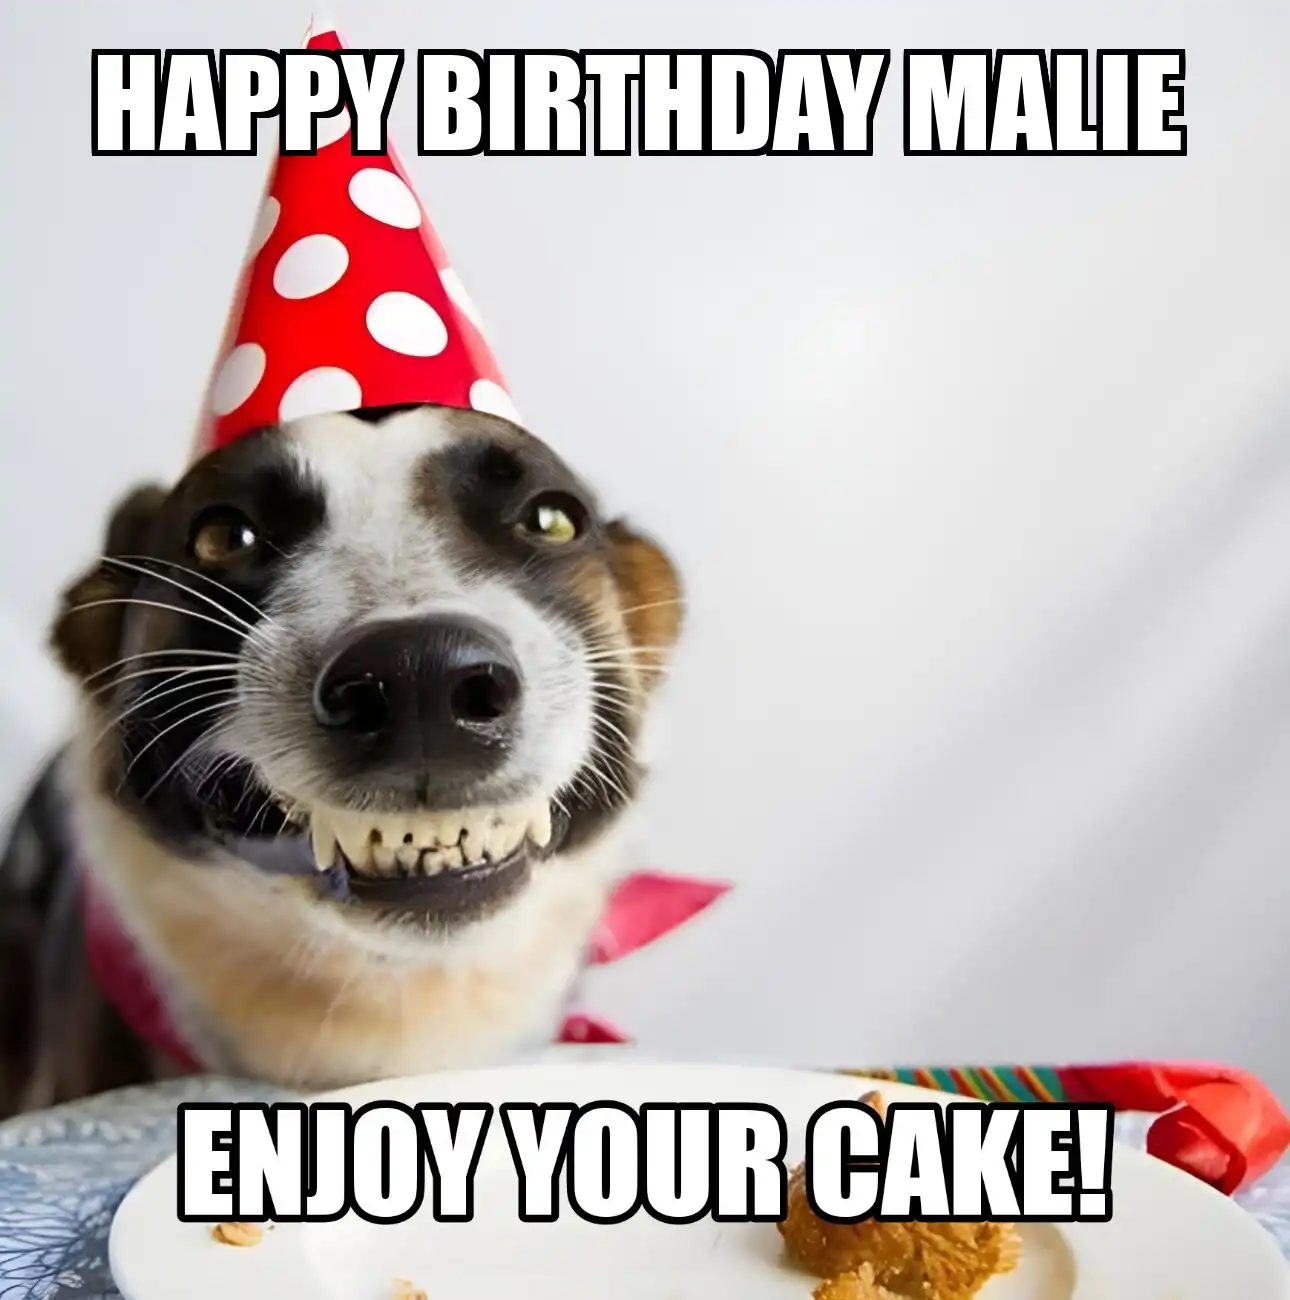 Happy Birthday Malie Enjoy Your Cake Dog Meme